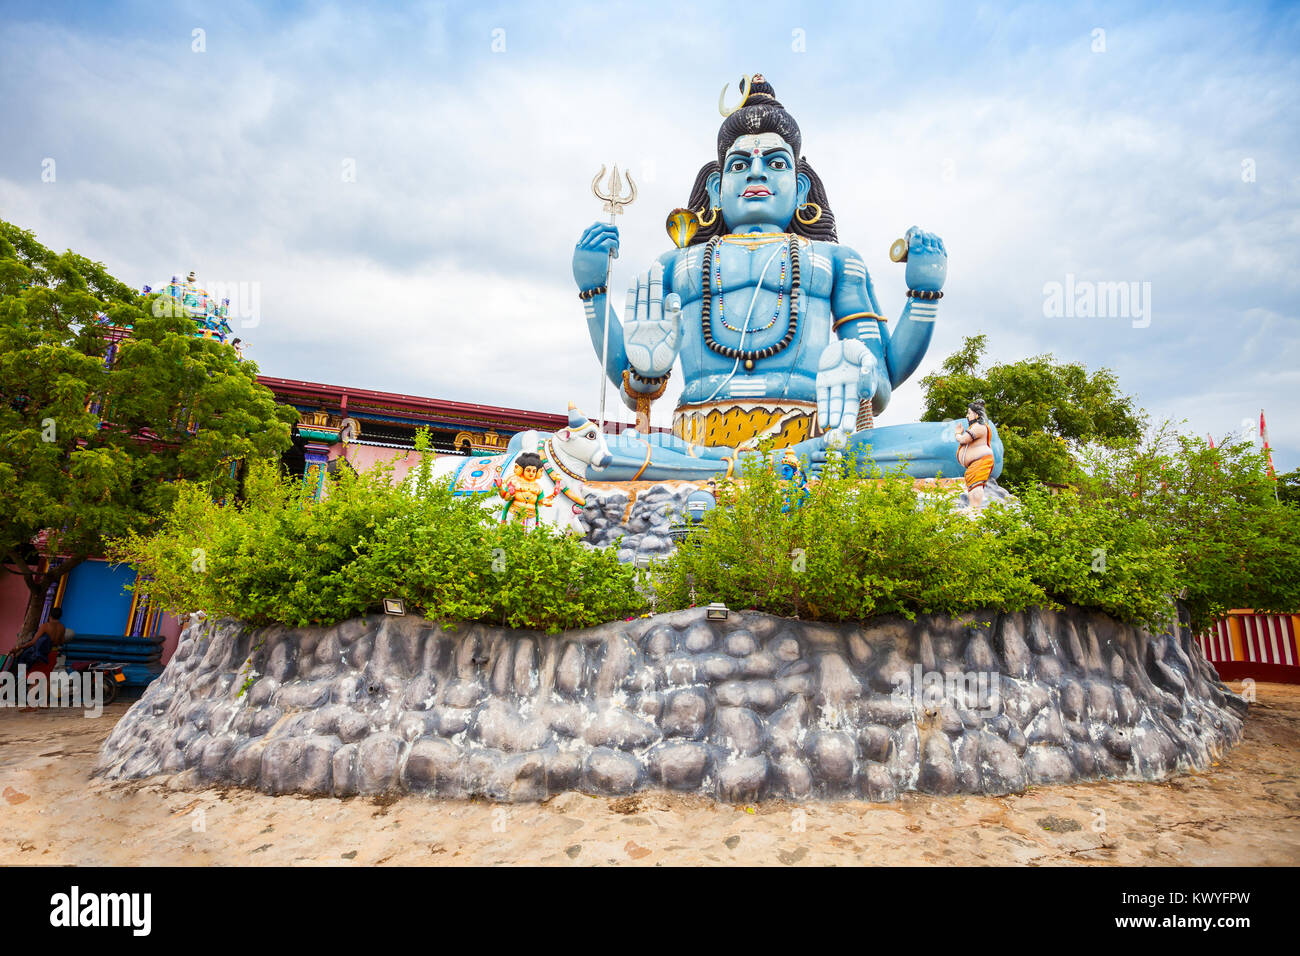 Koneswaram Tempel auch bekannt als Dakshinakailasha ist eine klassische mittelalterlichen Hindu Tempel zu Lord Shiva in Trincomalee, Sri Lanka eingeweiht Stockfoto